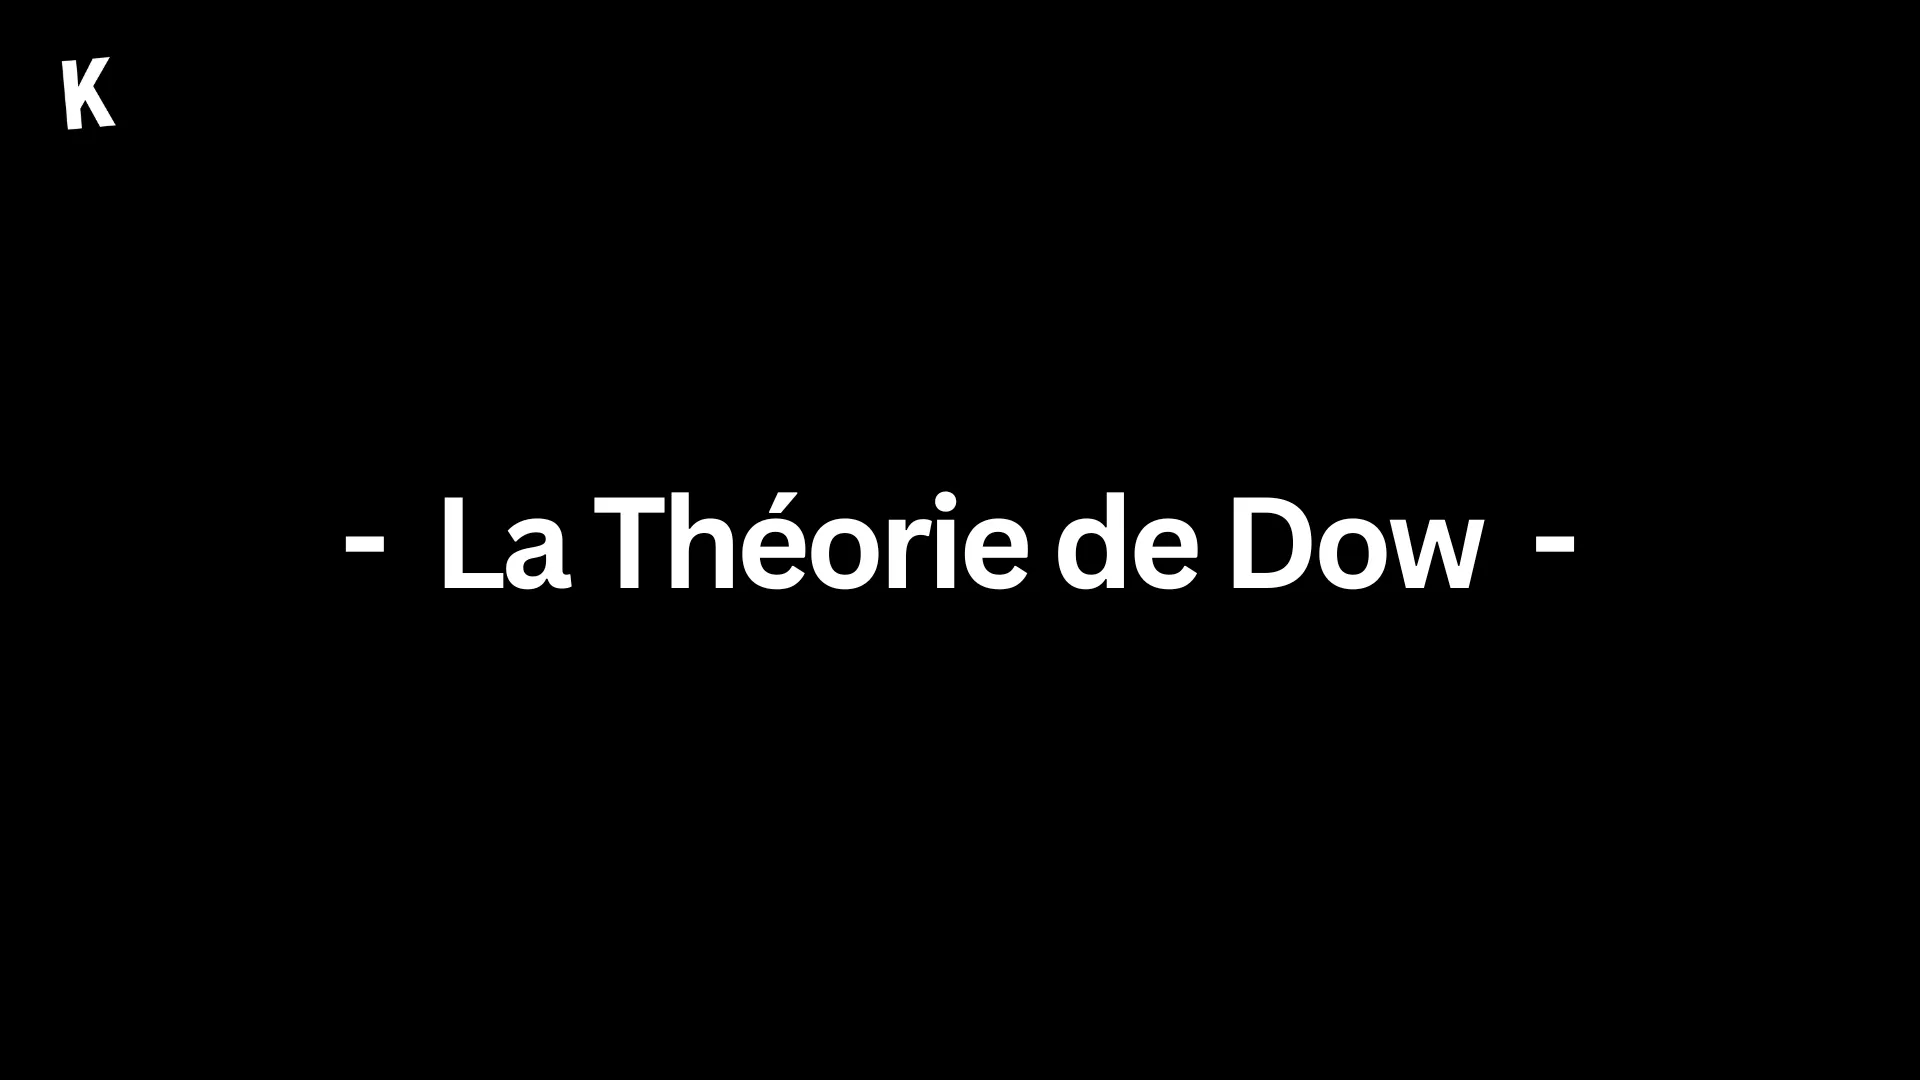 La Théorie de Dow